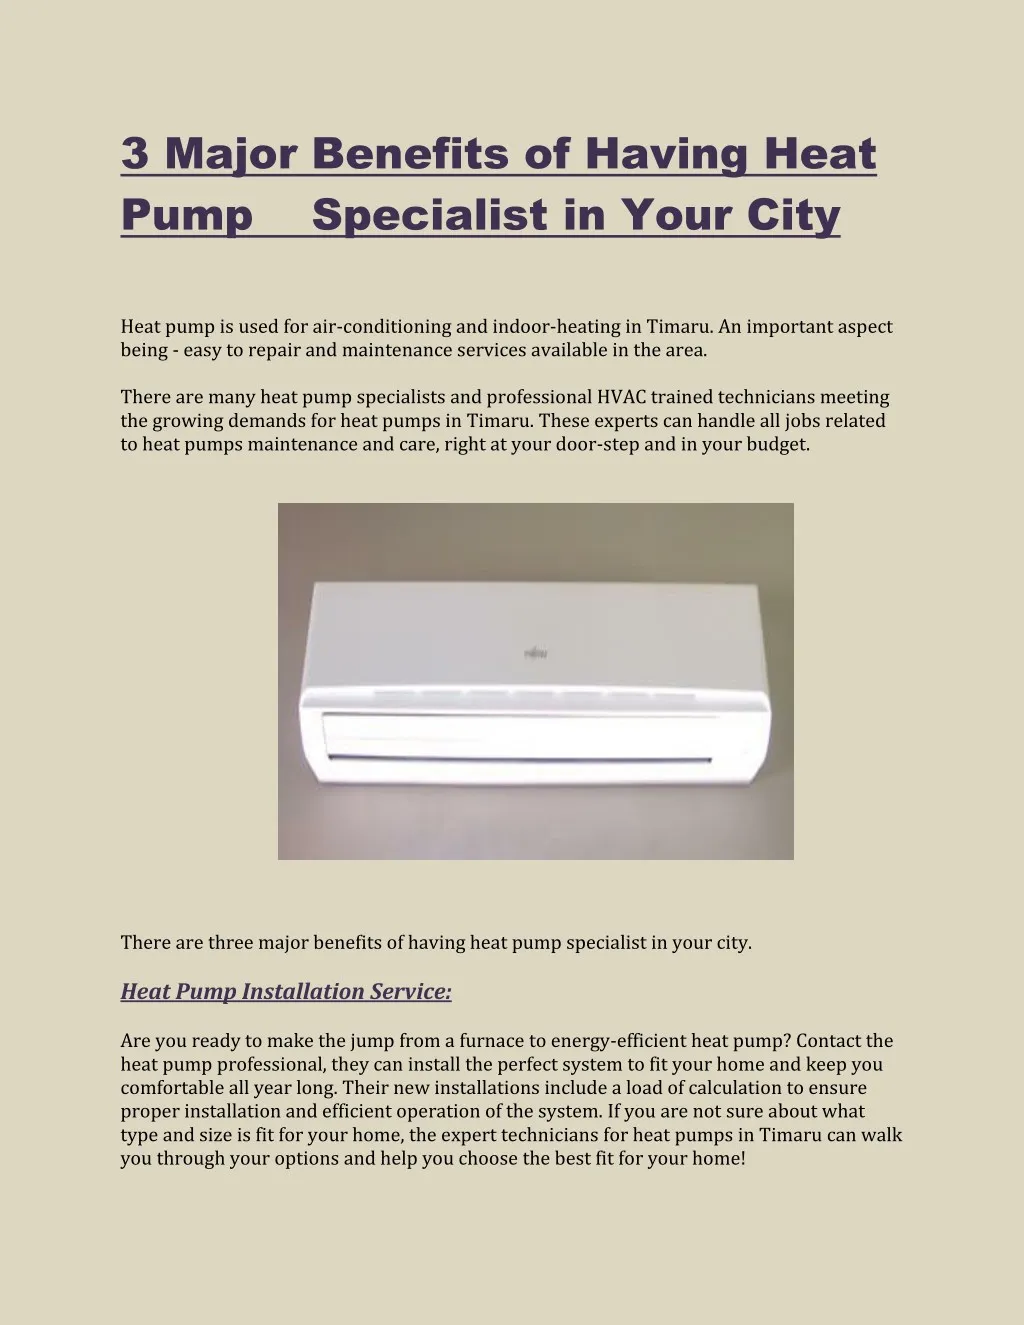 3 major benefits of having heat pump specialist